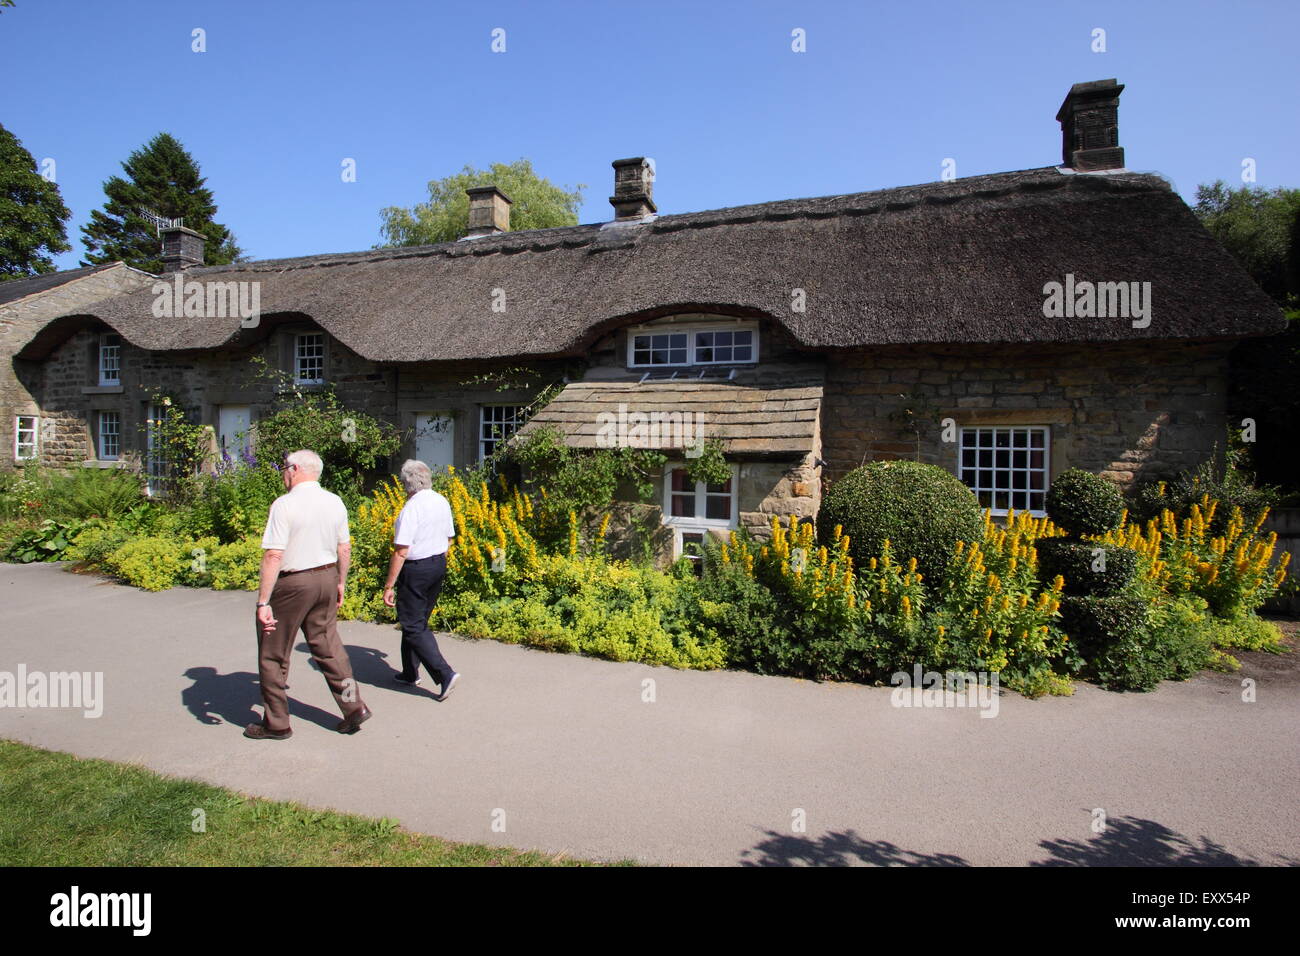 Un tman e donna passi da un tradizionale britannica cottage con il tetto di paglia nella campagna inglese, Peak District Derbyshire Inghilterra Foto Stock